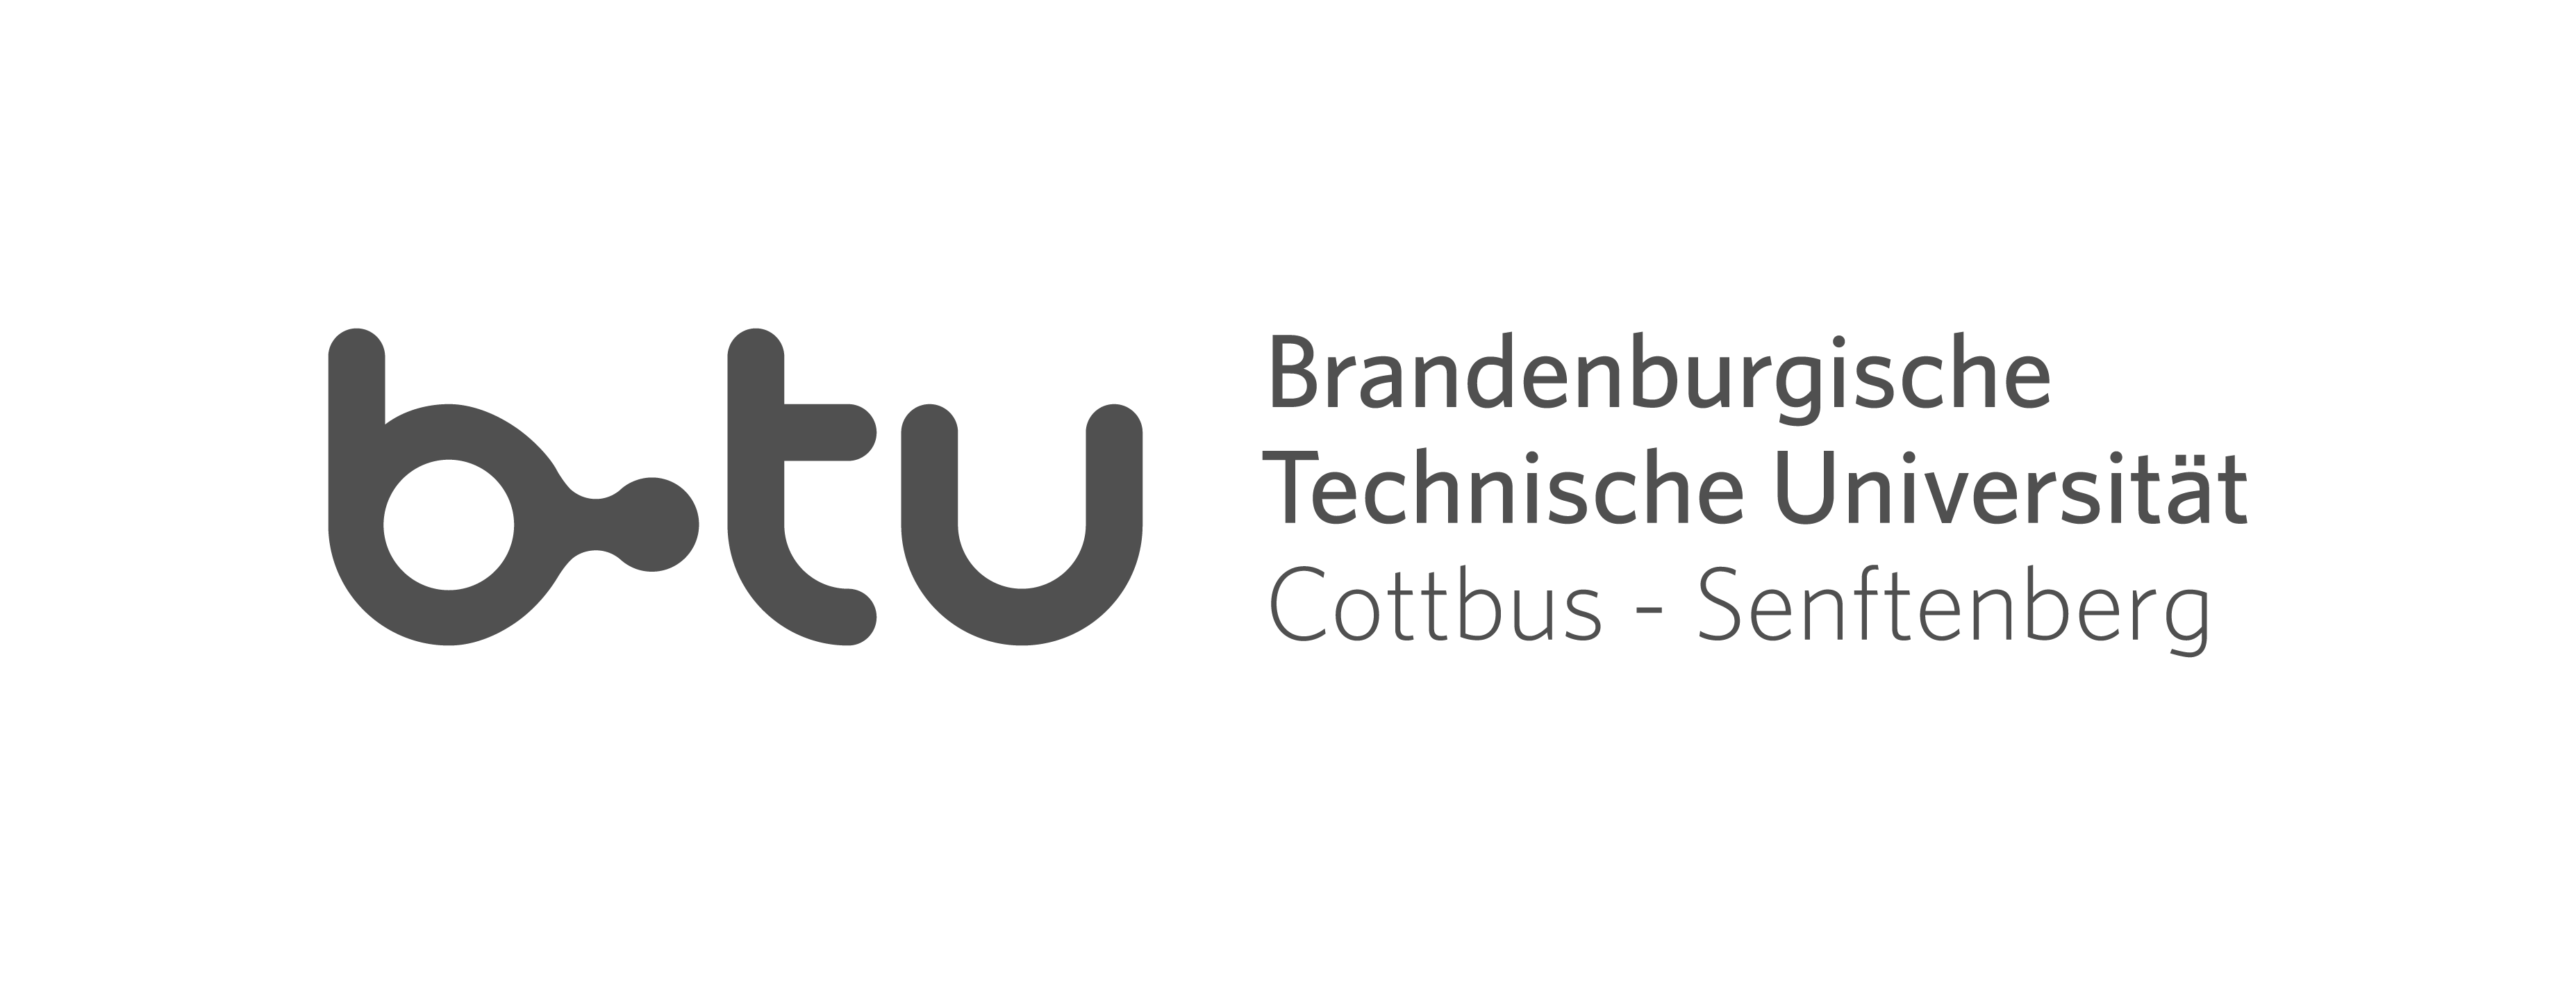 Logo der brandenburgischen, technischen Universität Cottbus - Senftenberg